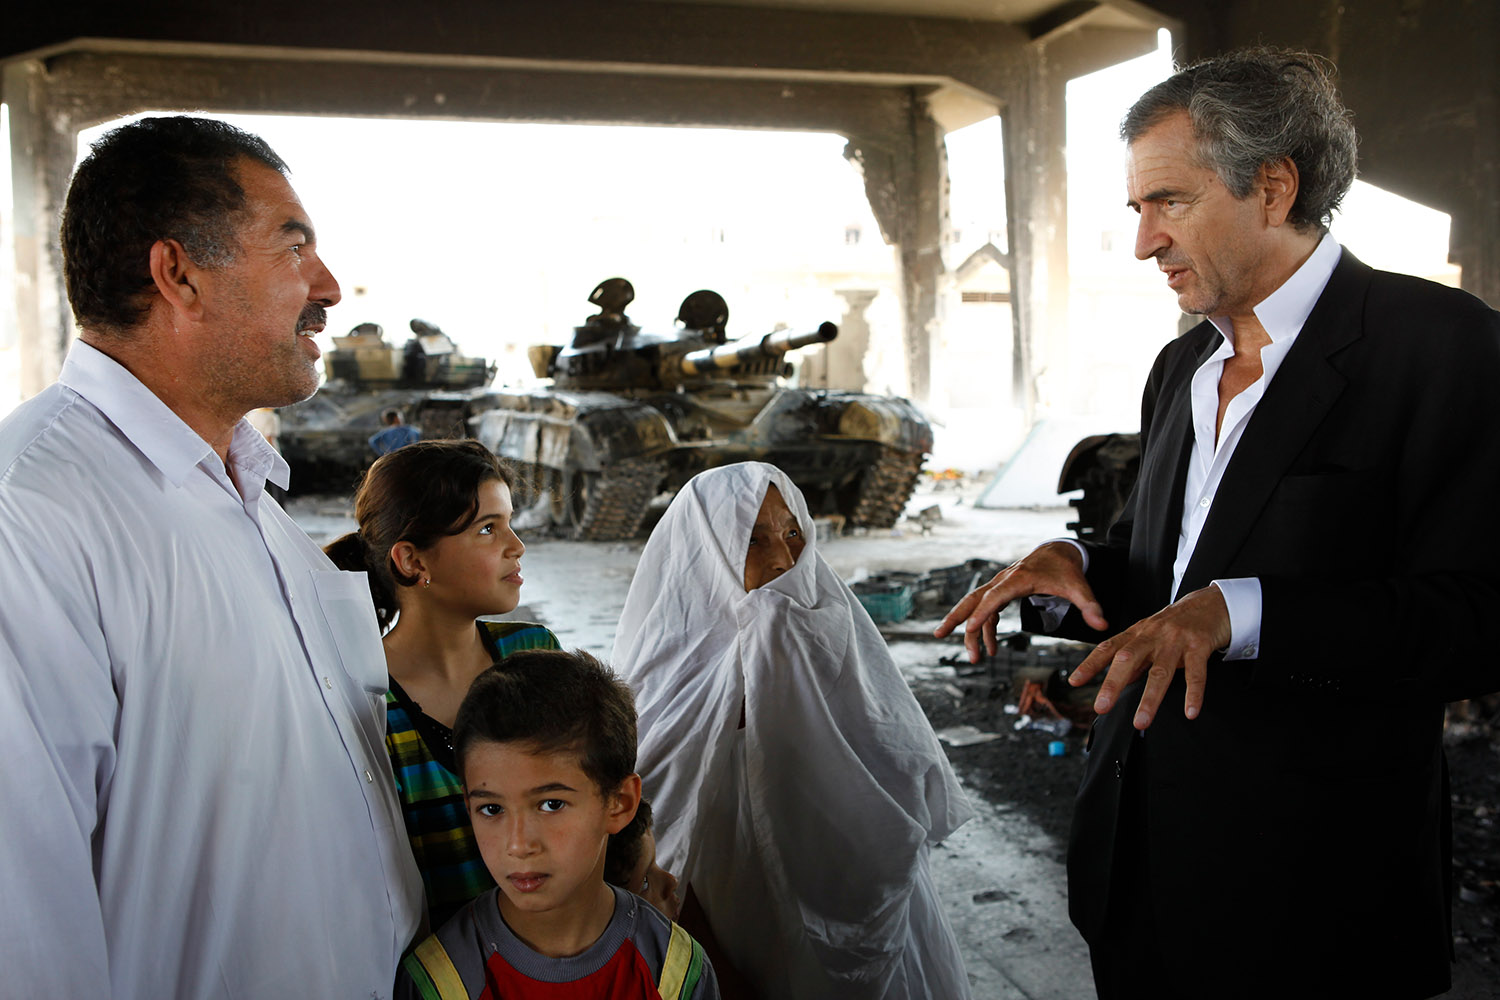 Bernard-Henri Lévy à la rencontre des Libyens à Misrata. BHL parle avec un homme, une femme et deux enfants. Derrière eux il y a des chars.